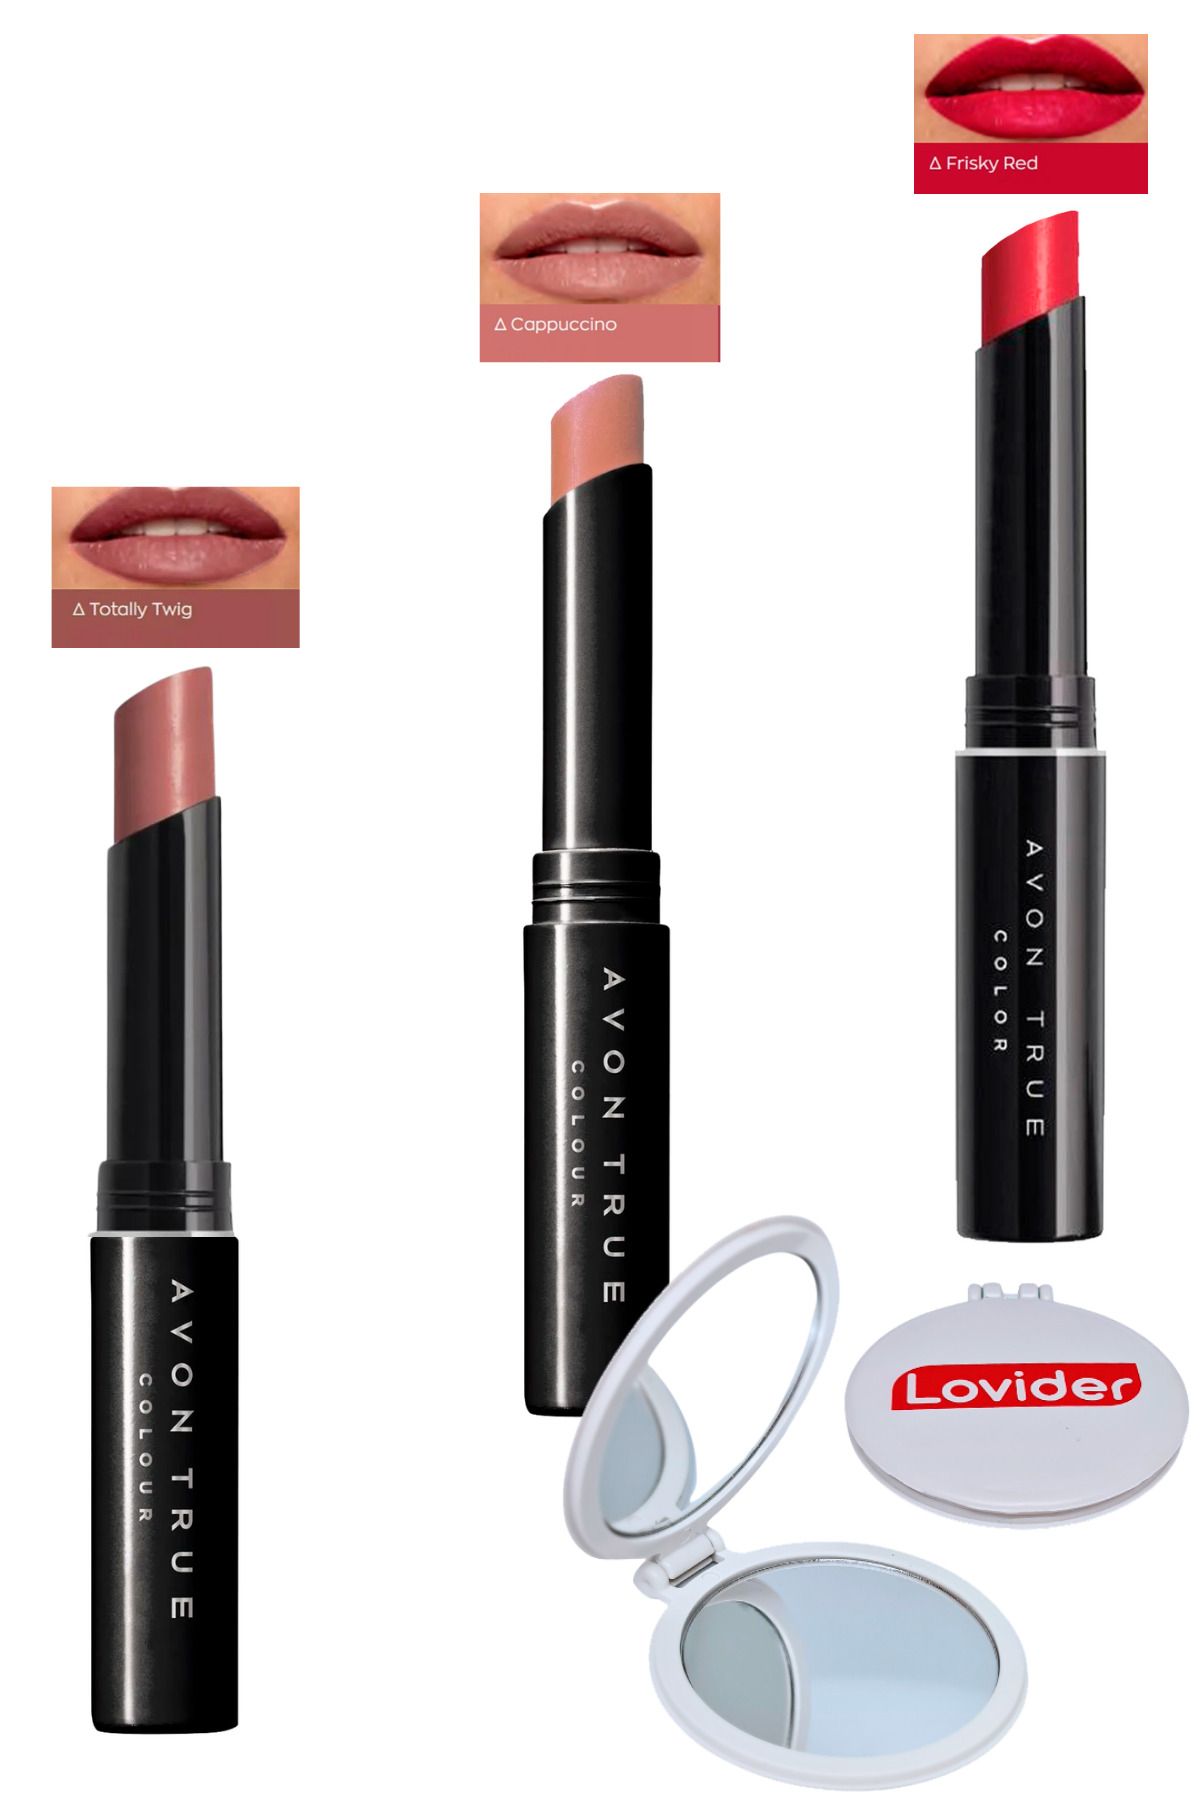 Avon Beauty 3'lü Ruj Paketi - Totally Twig + Cappuccino + Frisky Red + Lovider Cep Aynası